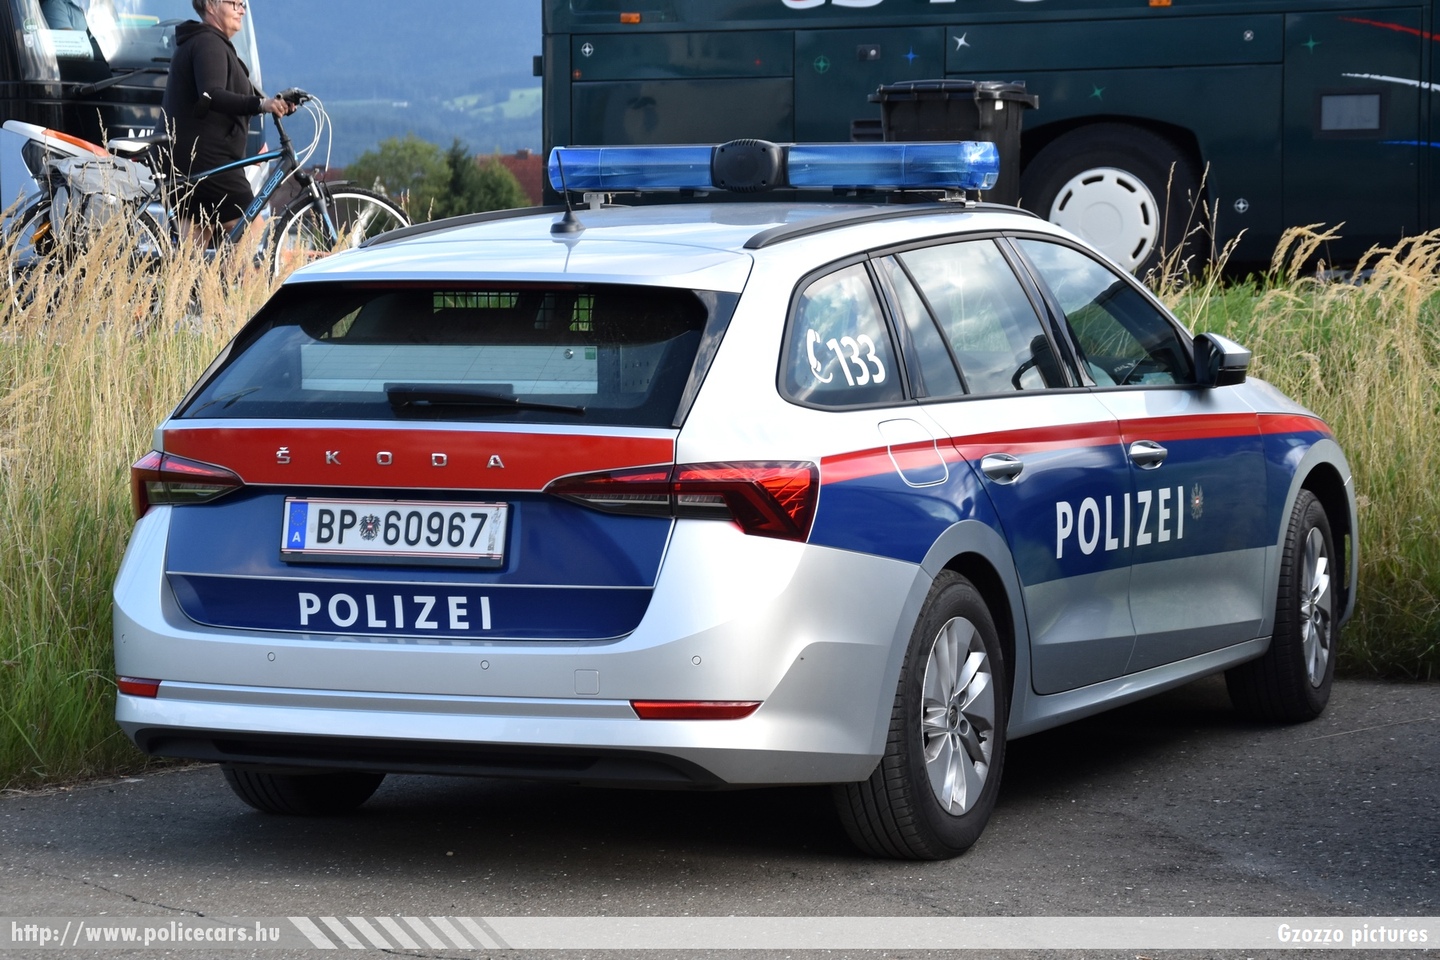 Skoda Octavia IV, fotó: Gzozzo pictures
Keywords: osztrák Ausztria rendőr rendőrautó rendőrség police policecar Austria austrian